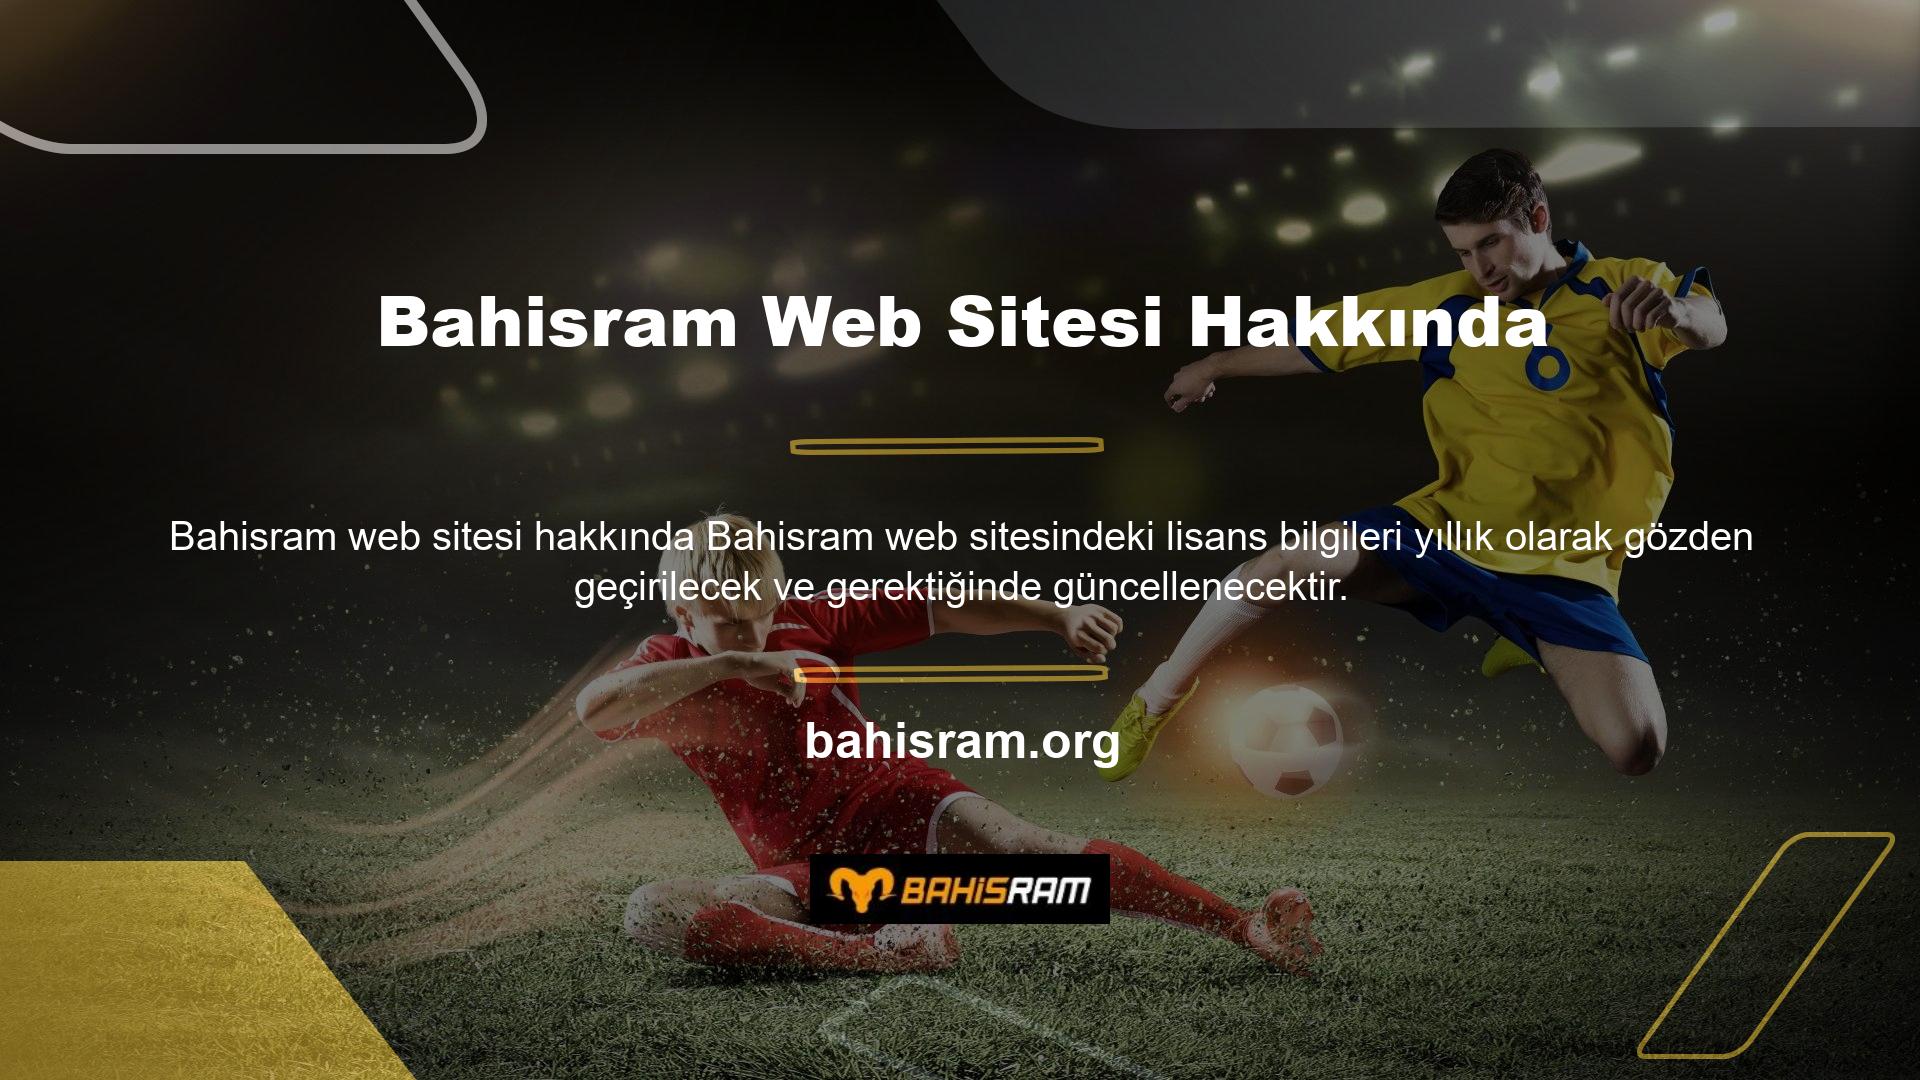 Yetkili ve güvenilir Bahisram web sitesinde kullanıcıların erişim prosedürünü kolayca tamamlayabilmeleri için özel bir altyapı oluşturulmuştur